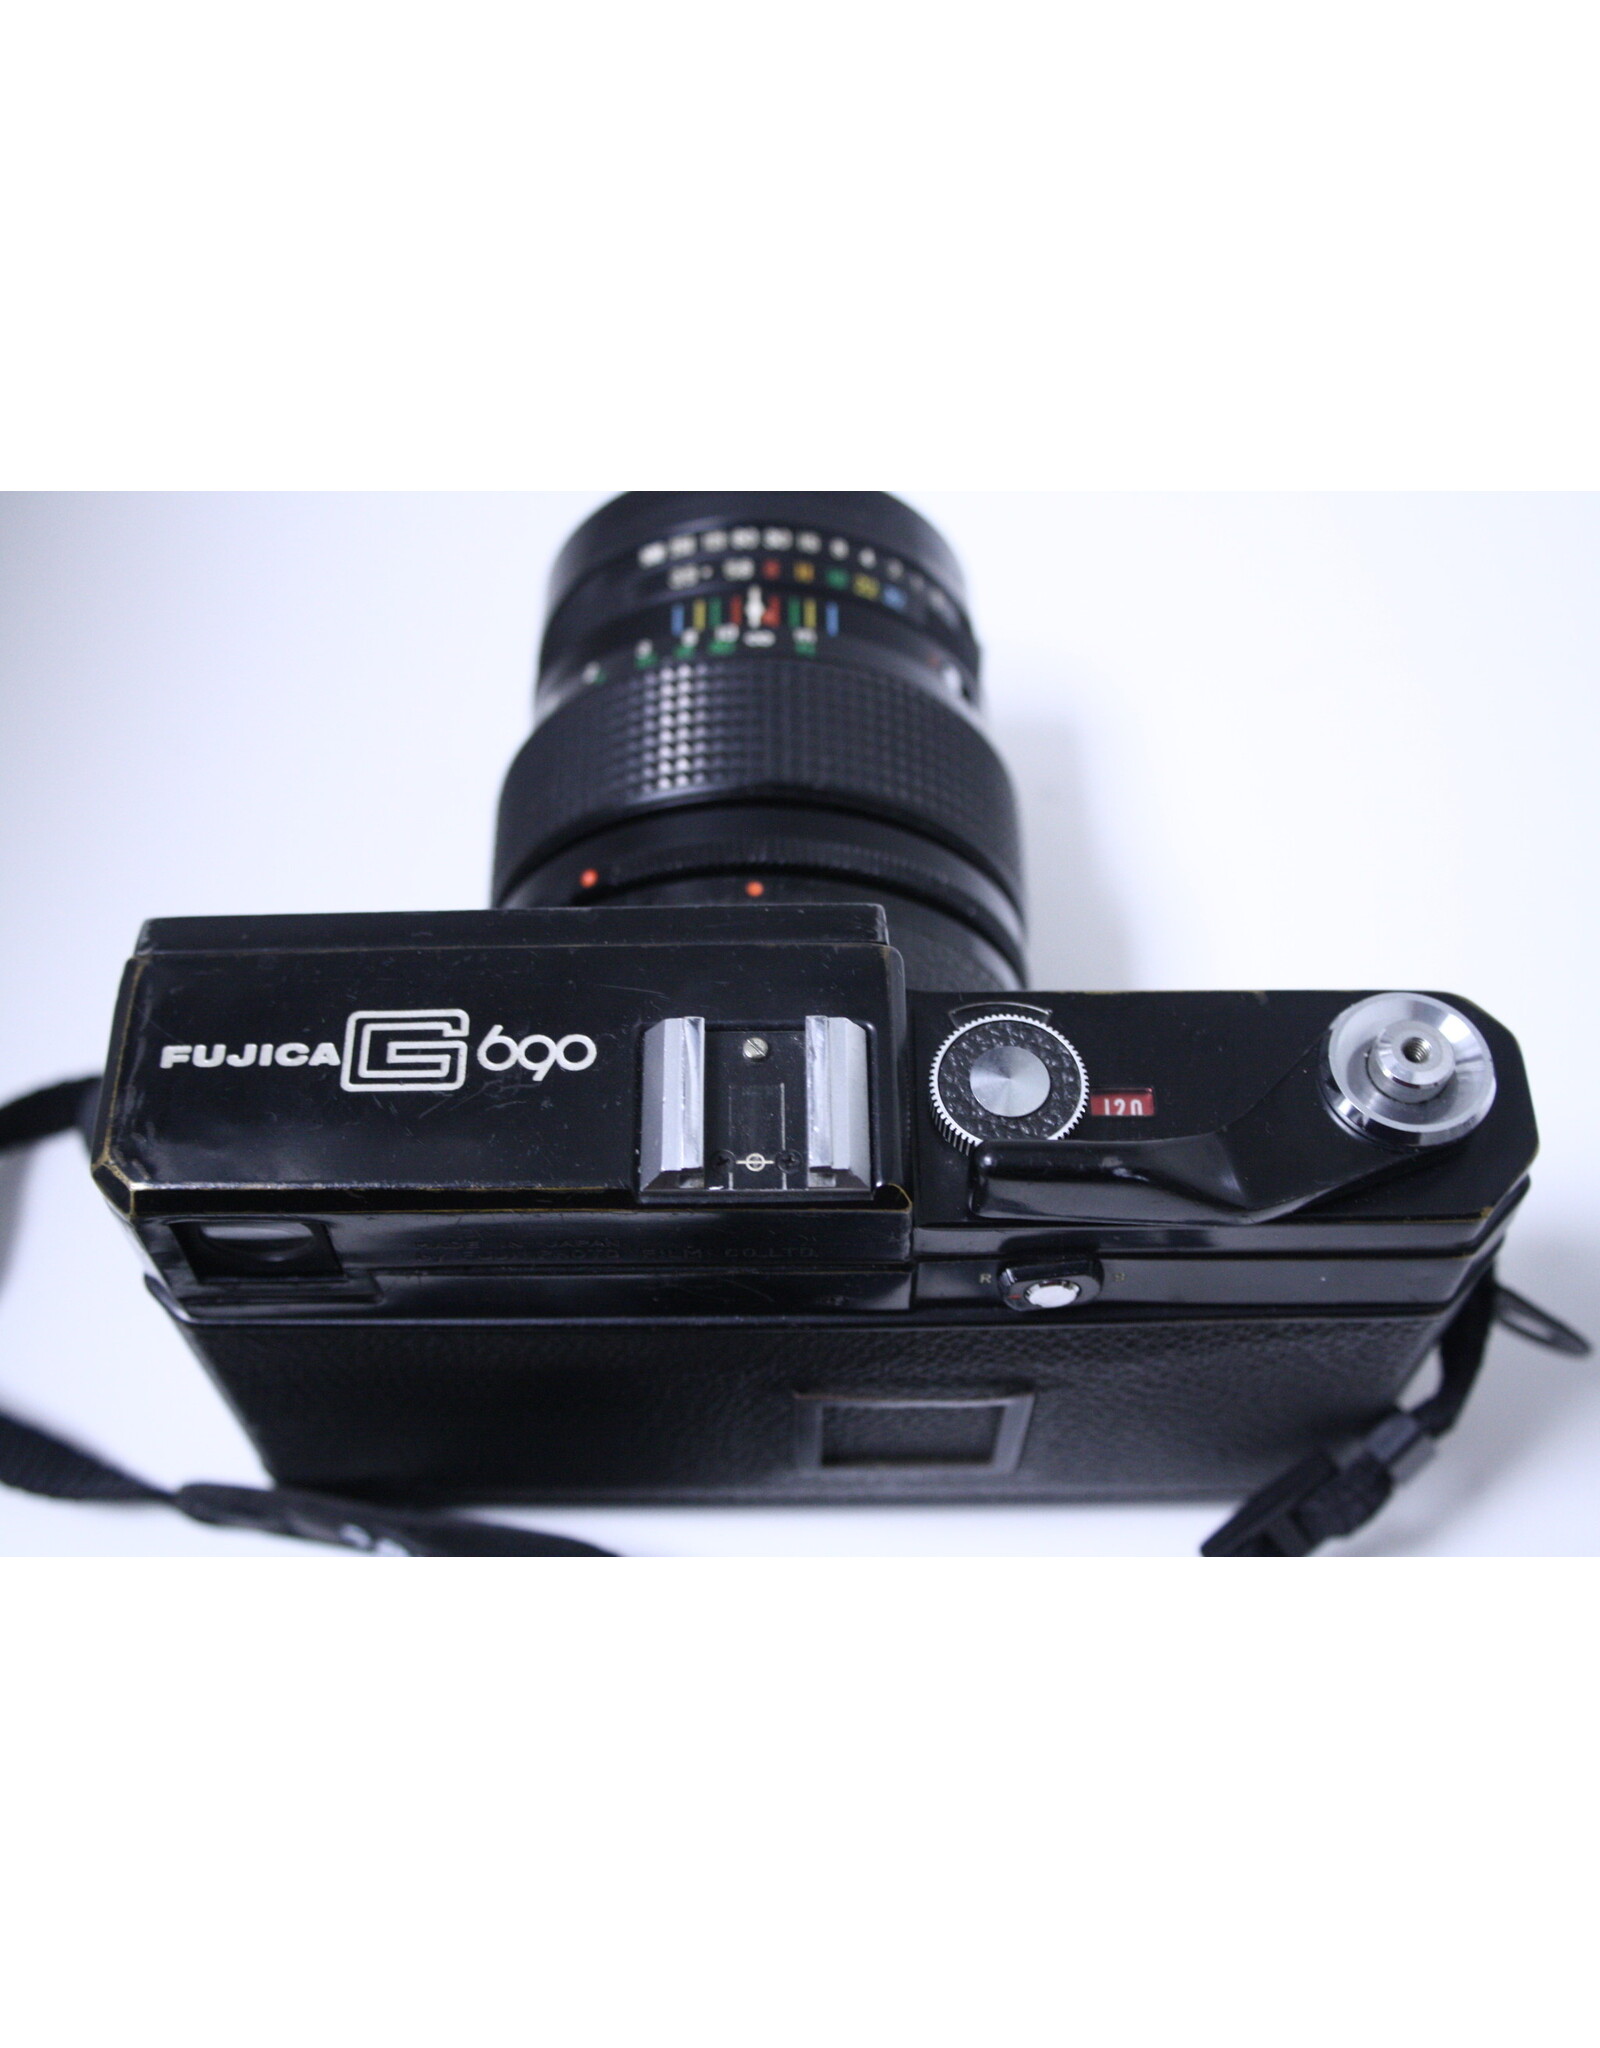 現状品】Fuji Fujica G690 BLP Film Camera FUJINON S 100mm f3.5 Lens ...